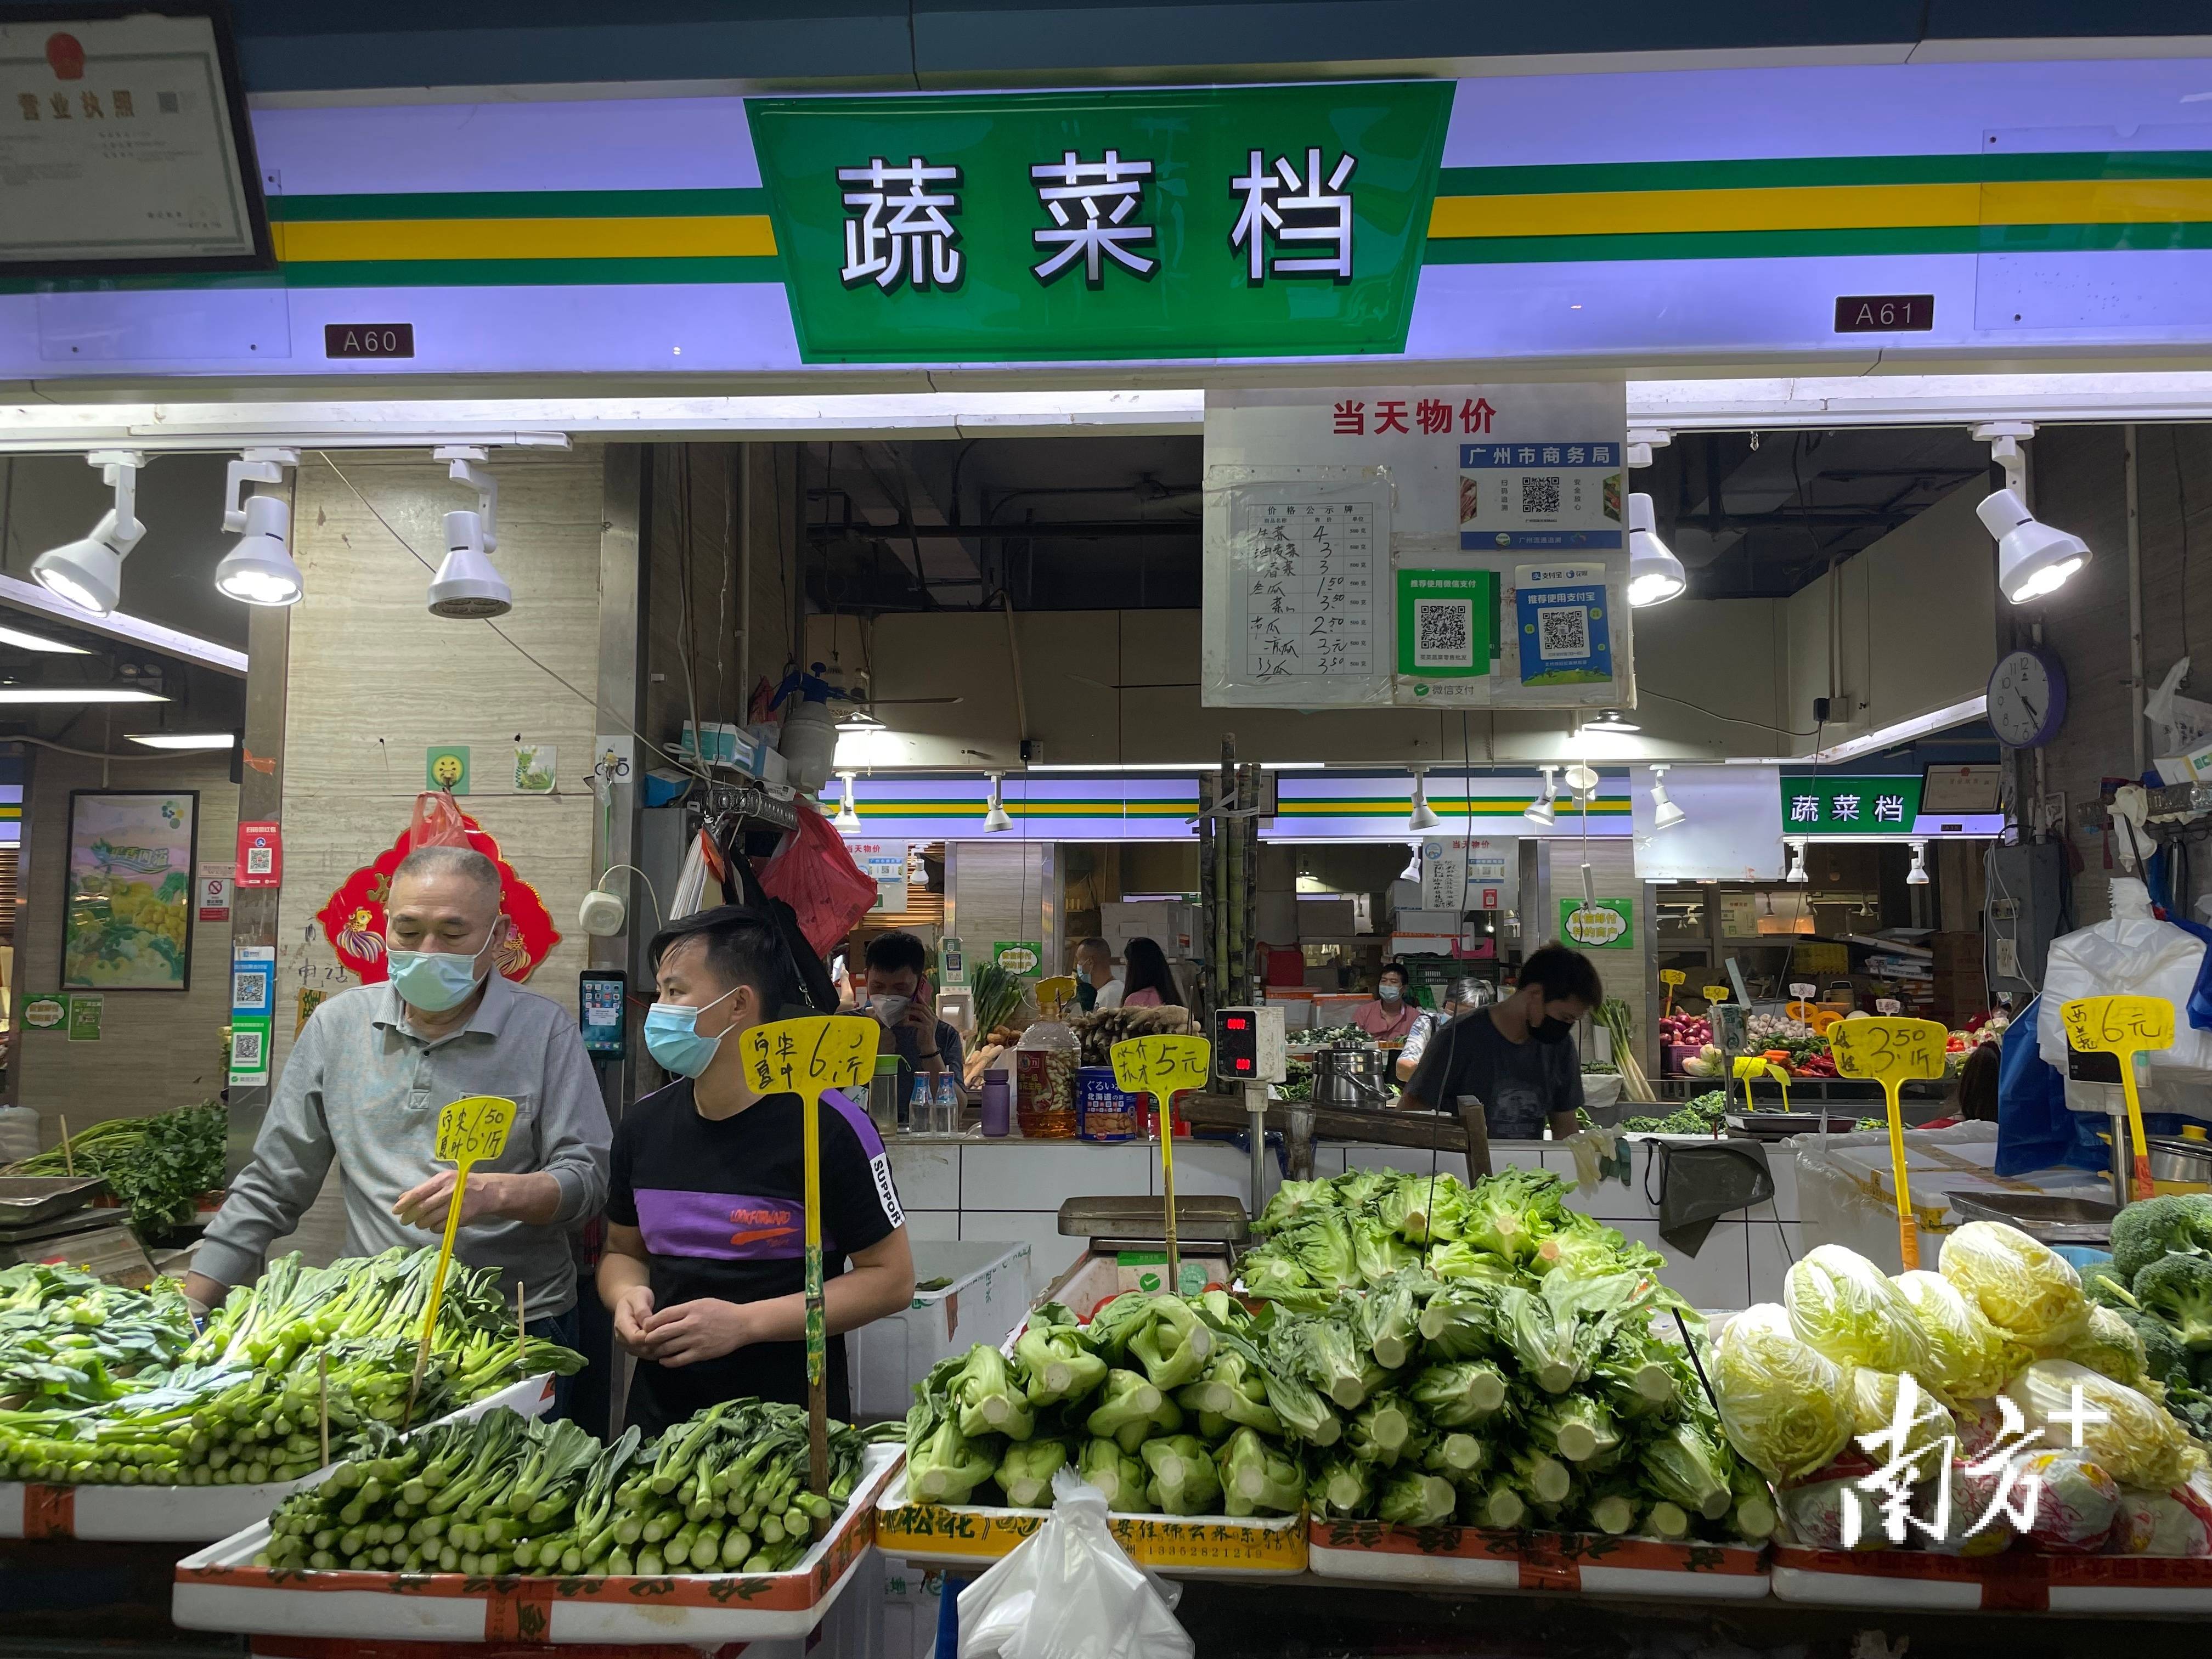 记者现场走访看到,各大超市和市场物资充足,新鲜蔬菜水果齐全